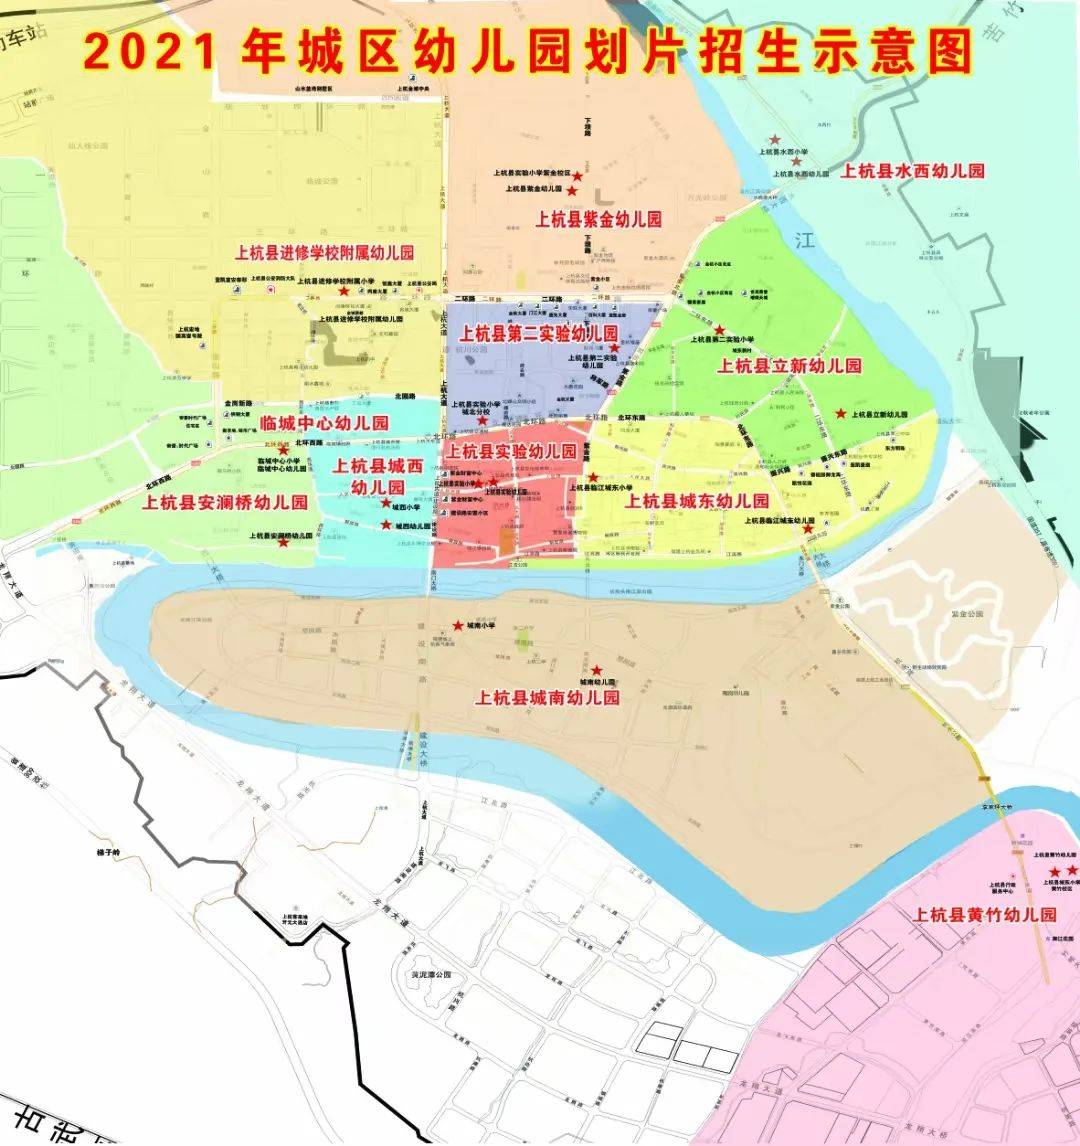 刚刚!上杭县2021年初中, 小学和城区公办幼儿园招生工作意见出炉!